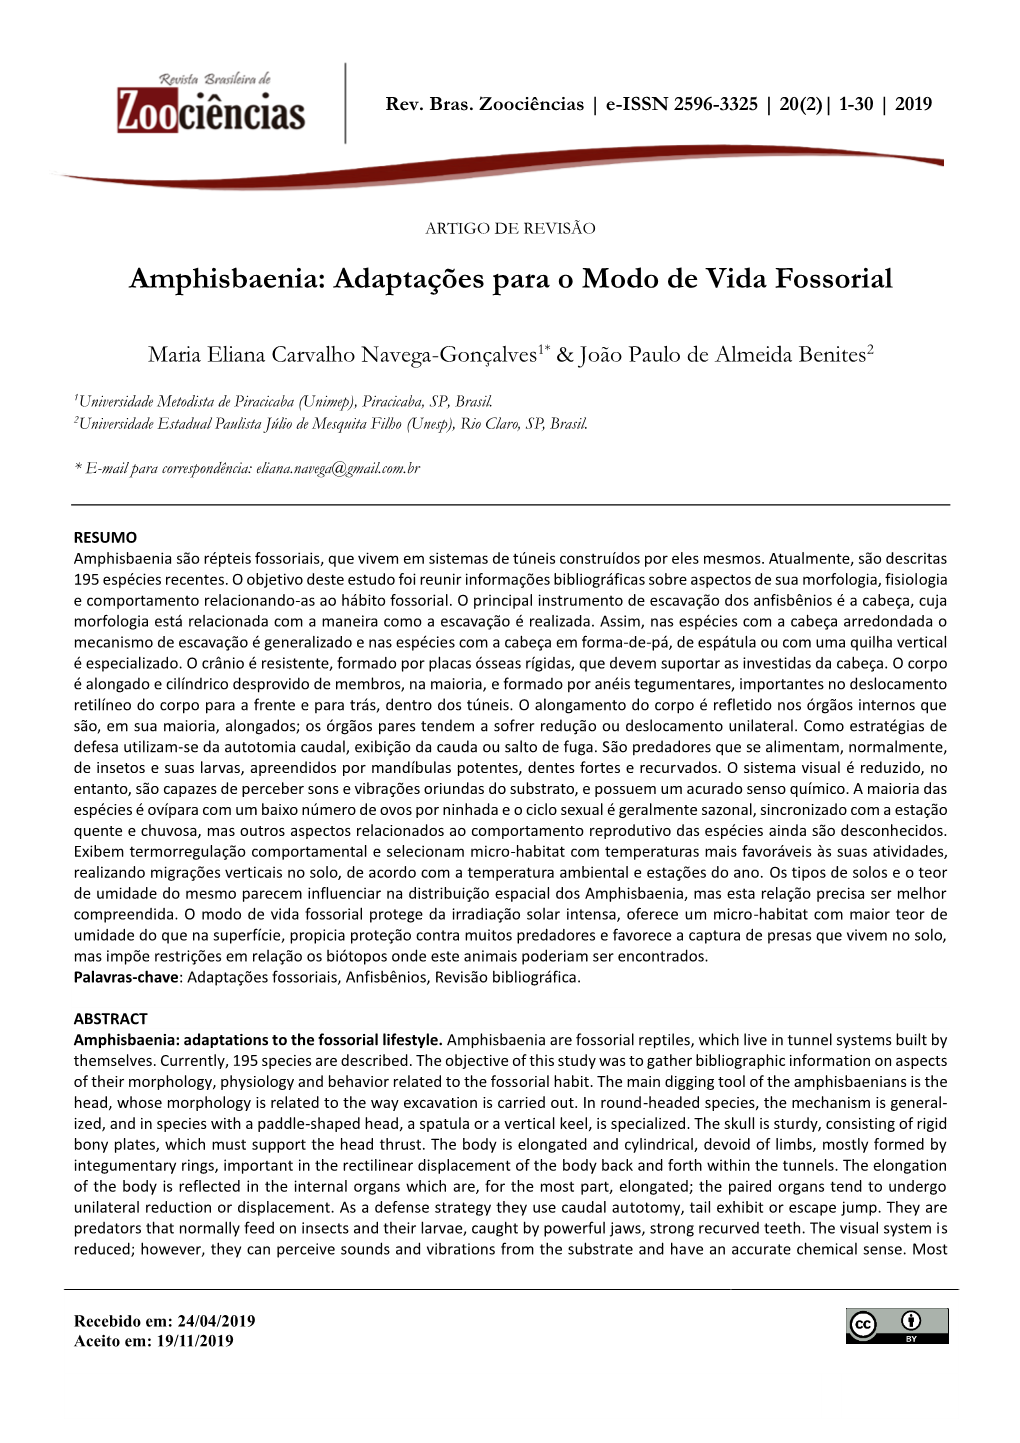 Amphisbaenia: Adaptações Para O Modo De Vida Fossorial